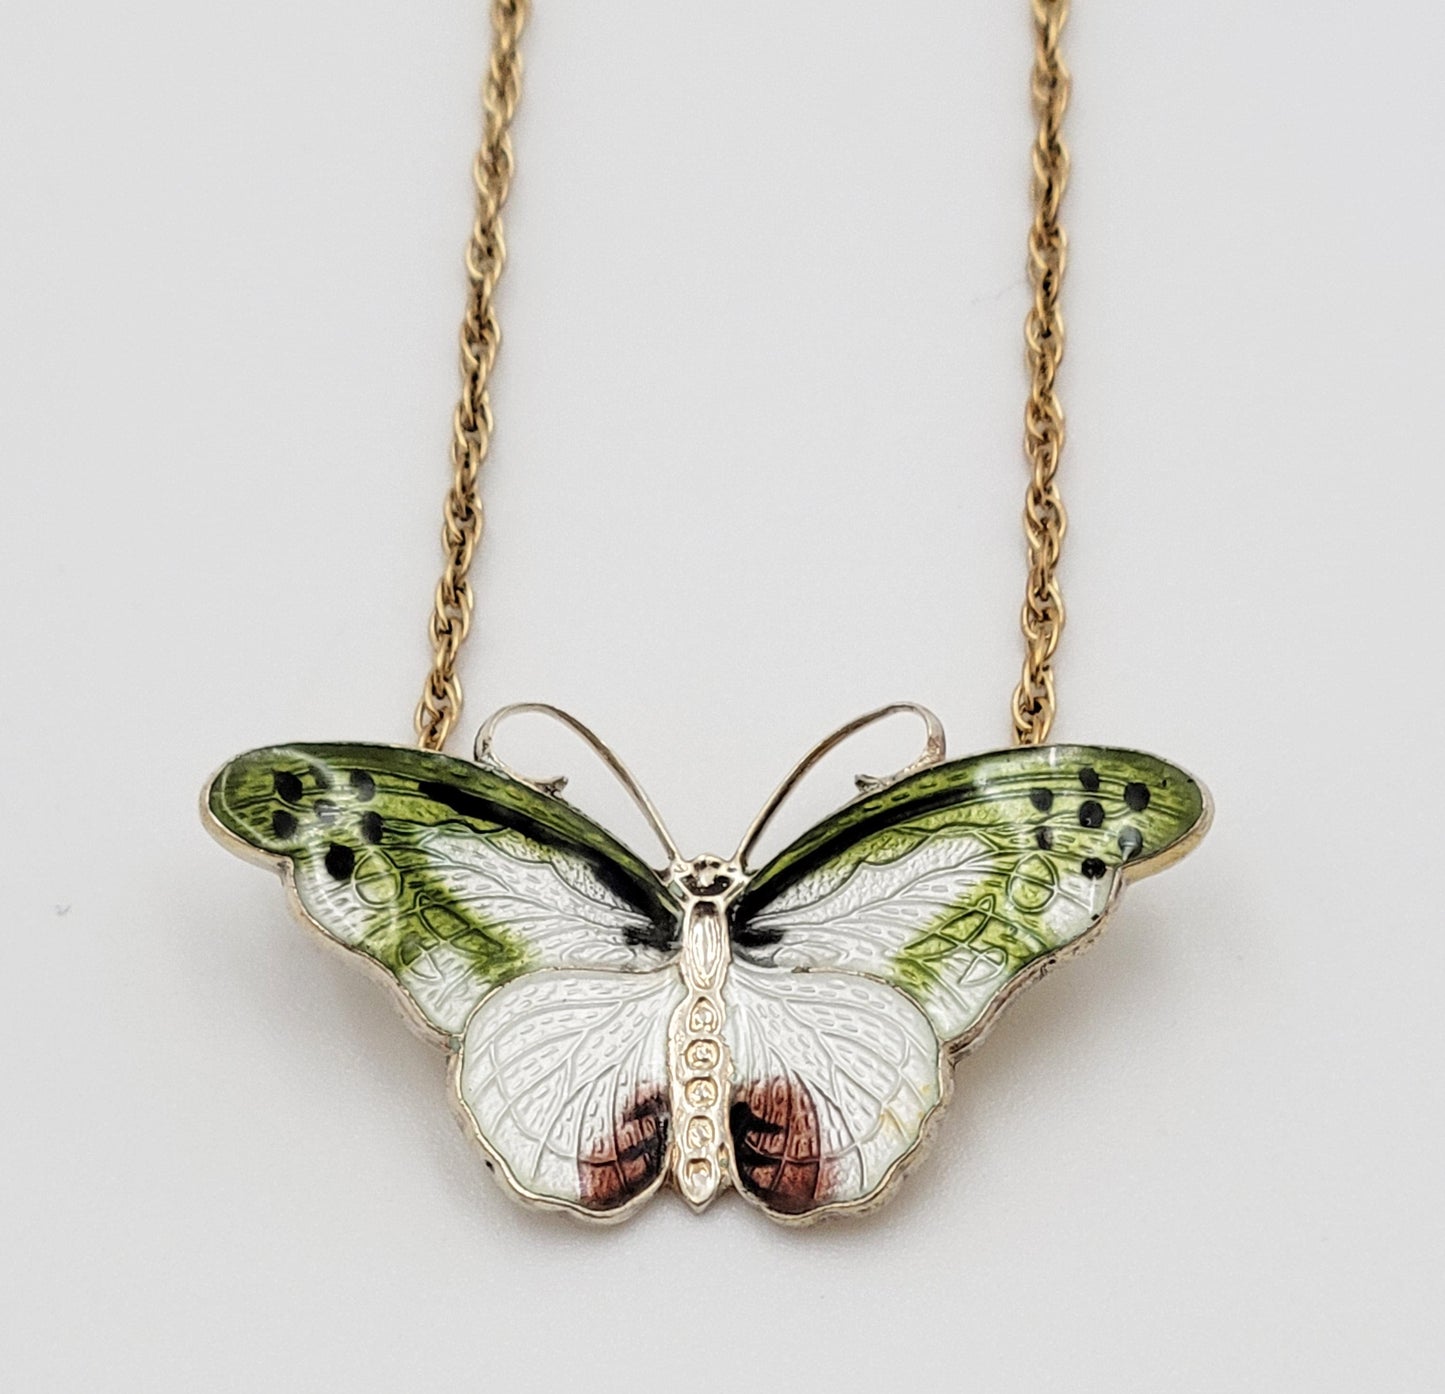 Hroar Prydz Jewelry Hroar Prydz Norway Sterling & Guilloche Enamel Butterfly Necklace 20/30s